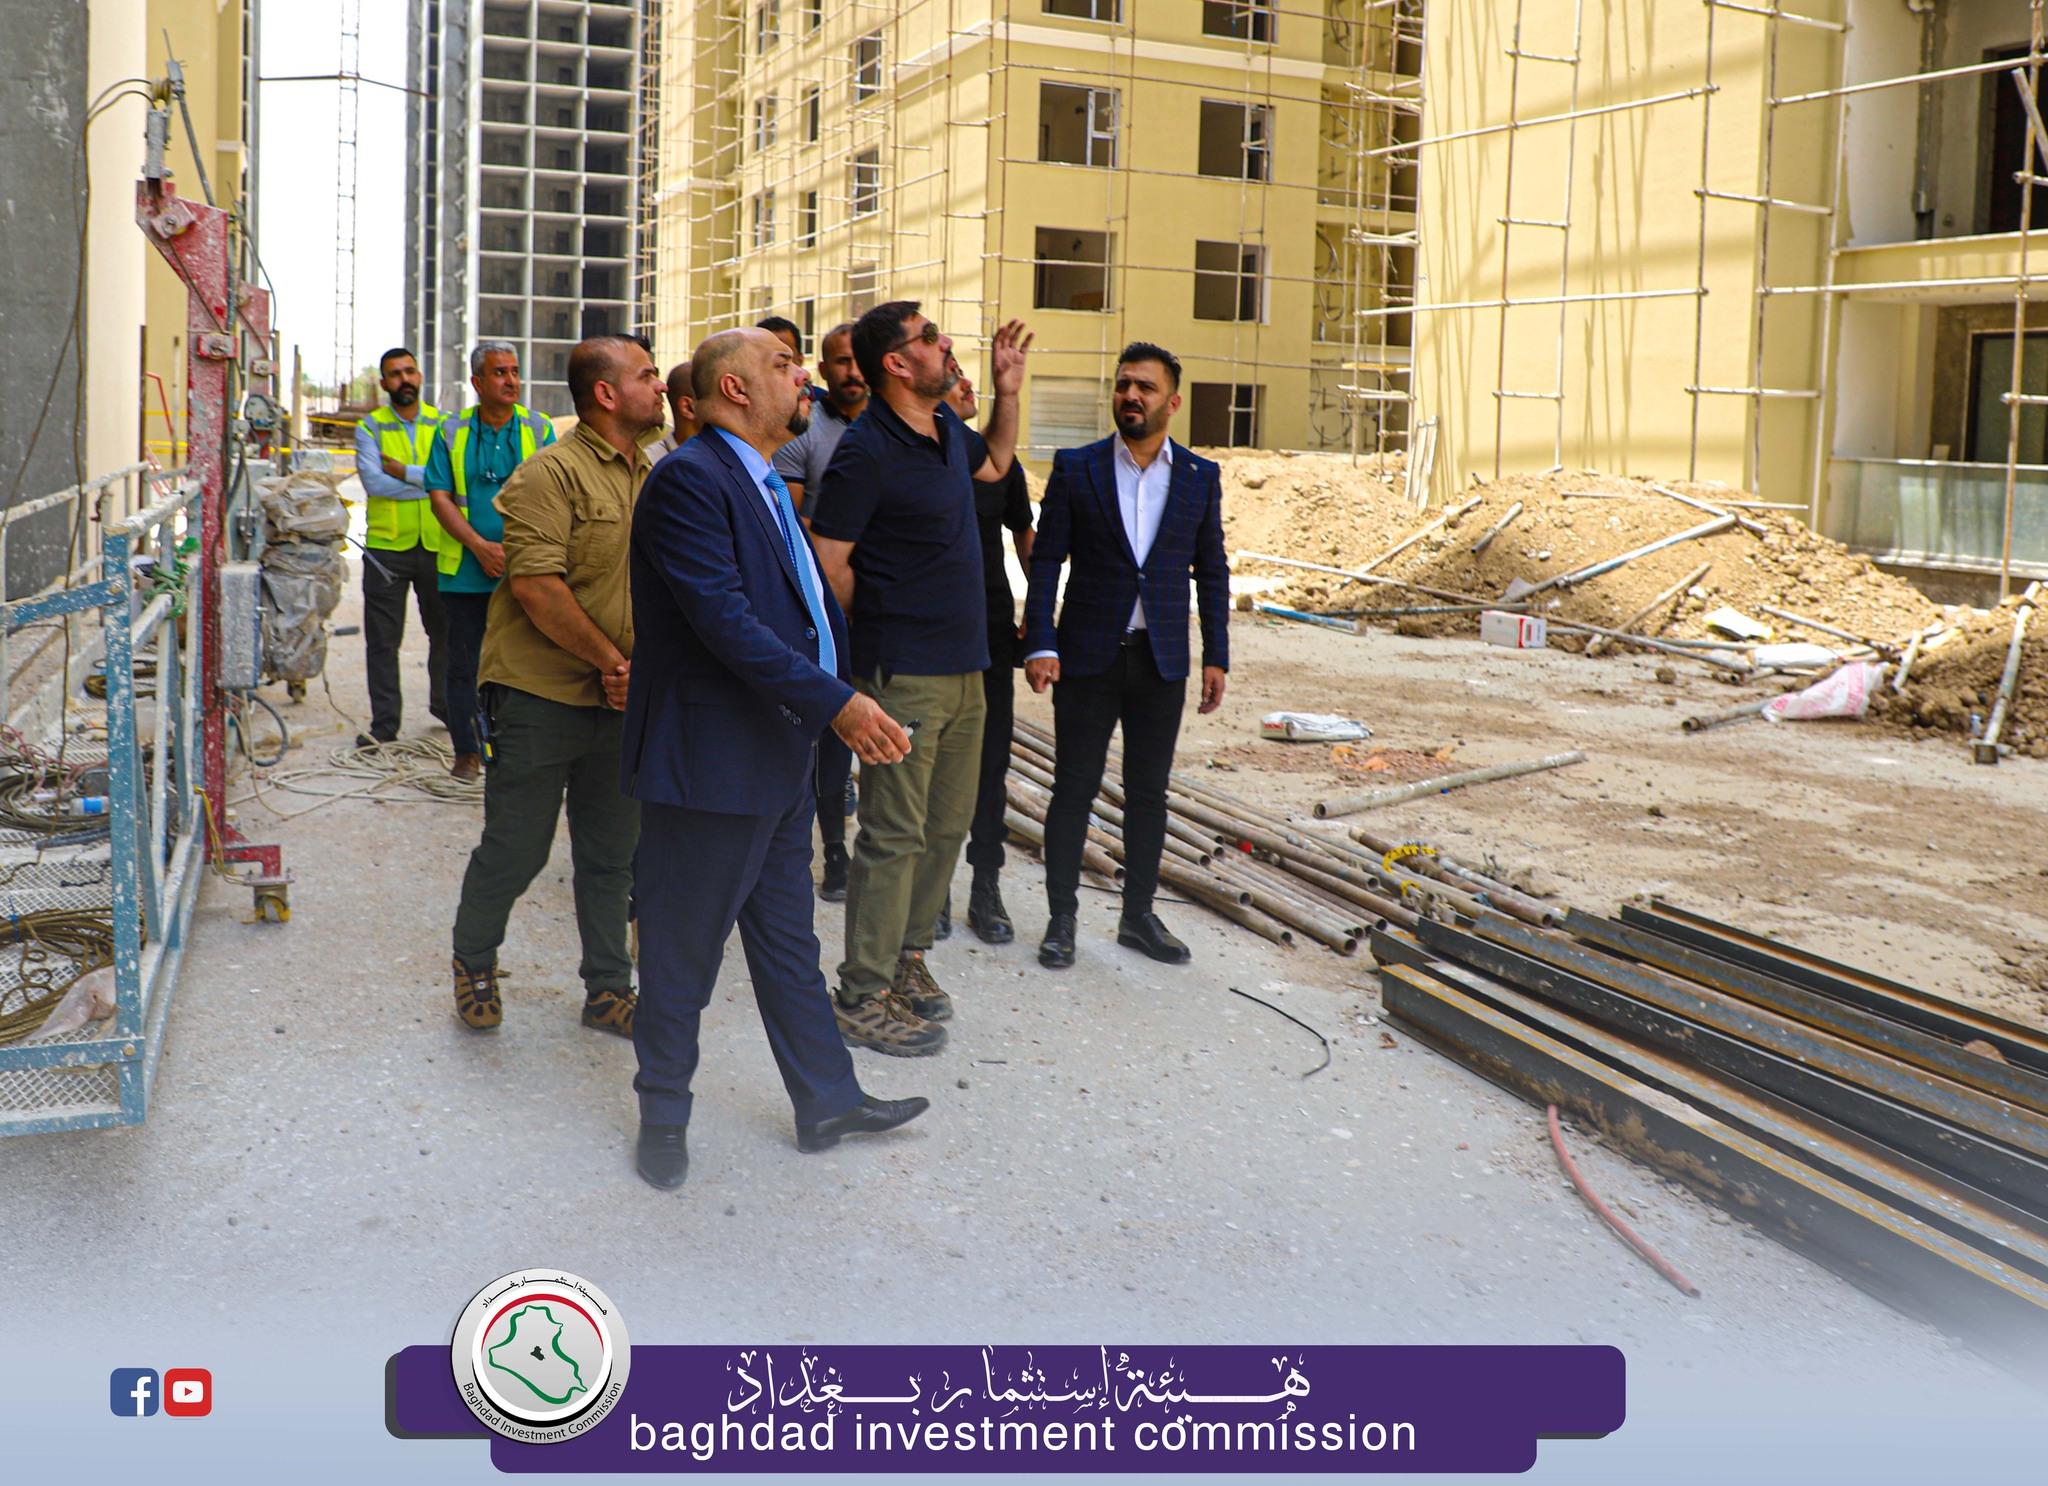 إستثمار بغداد :  المهندس الحسن جميل يؤكد بأن الإستثمار بوابة العراق نحو التطوير والنهوض والإبتكار